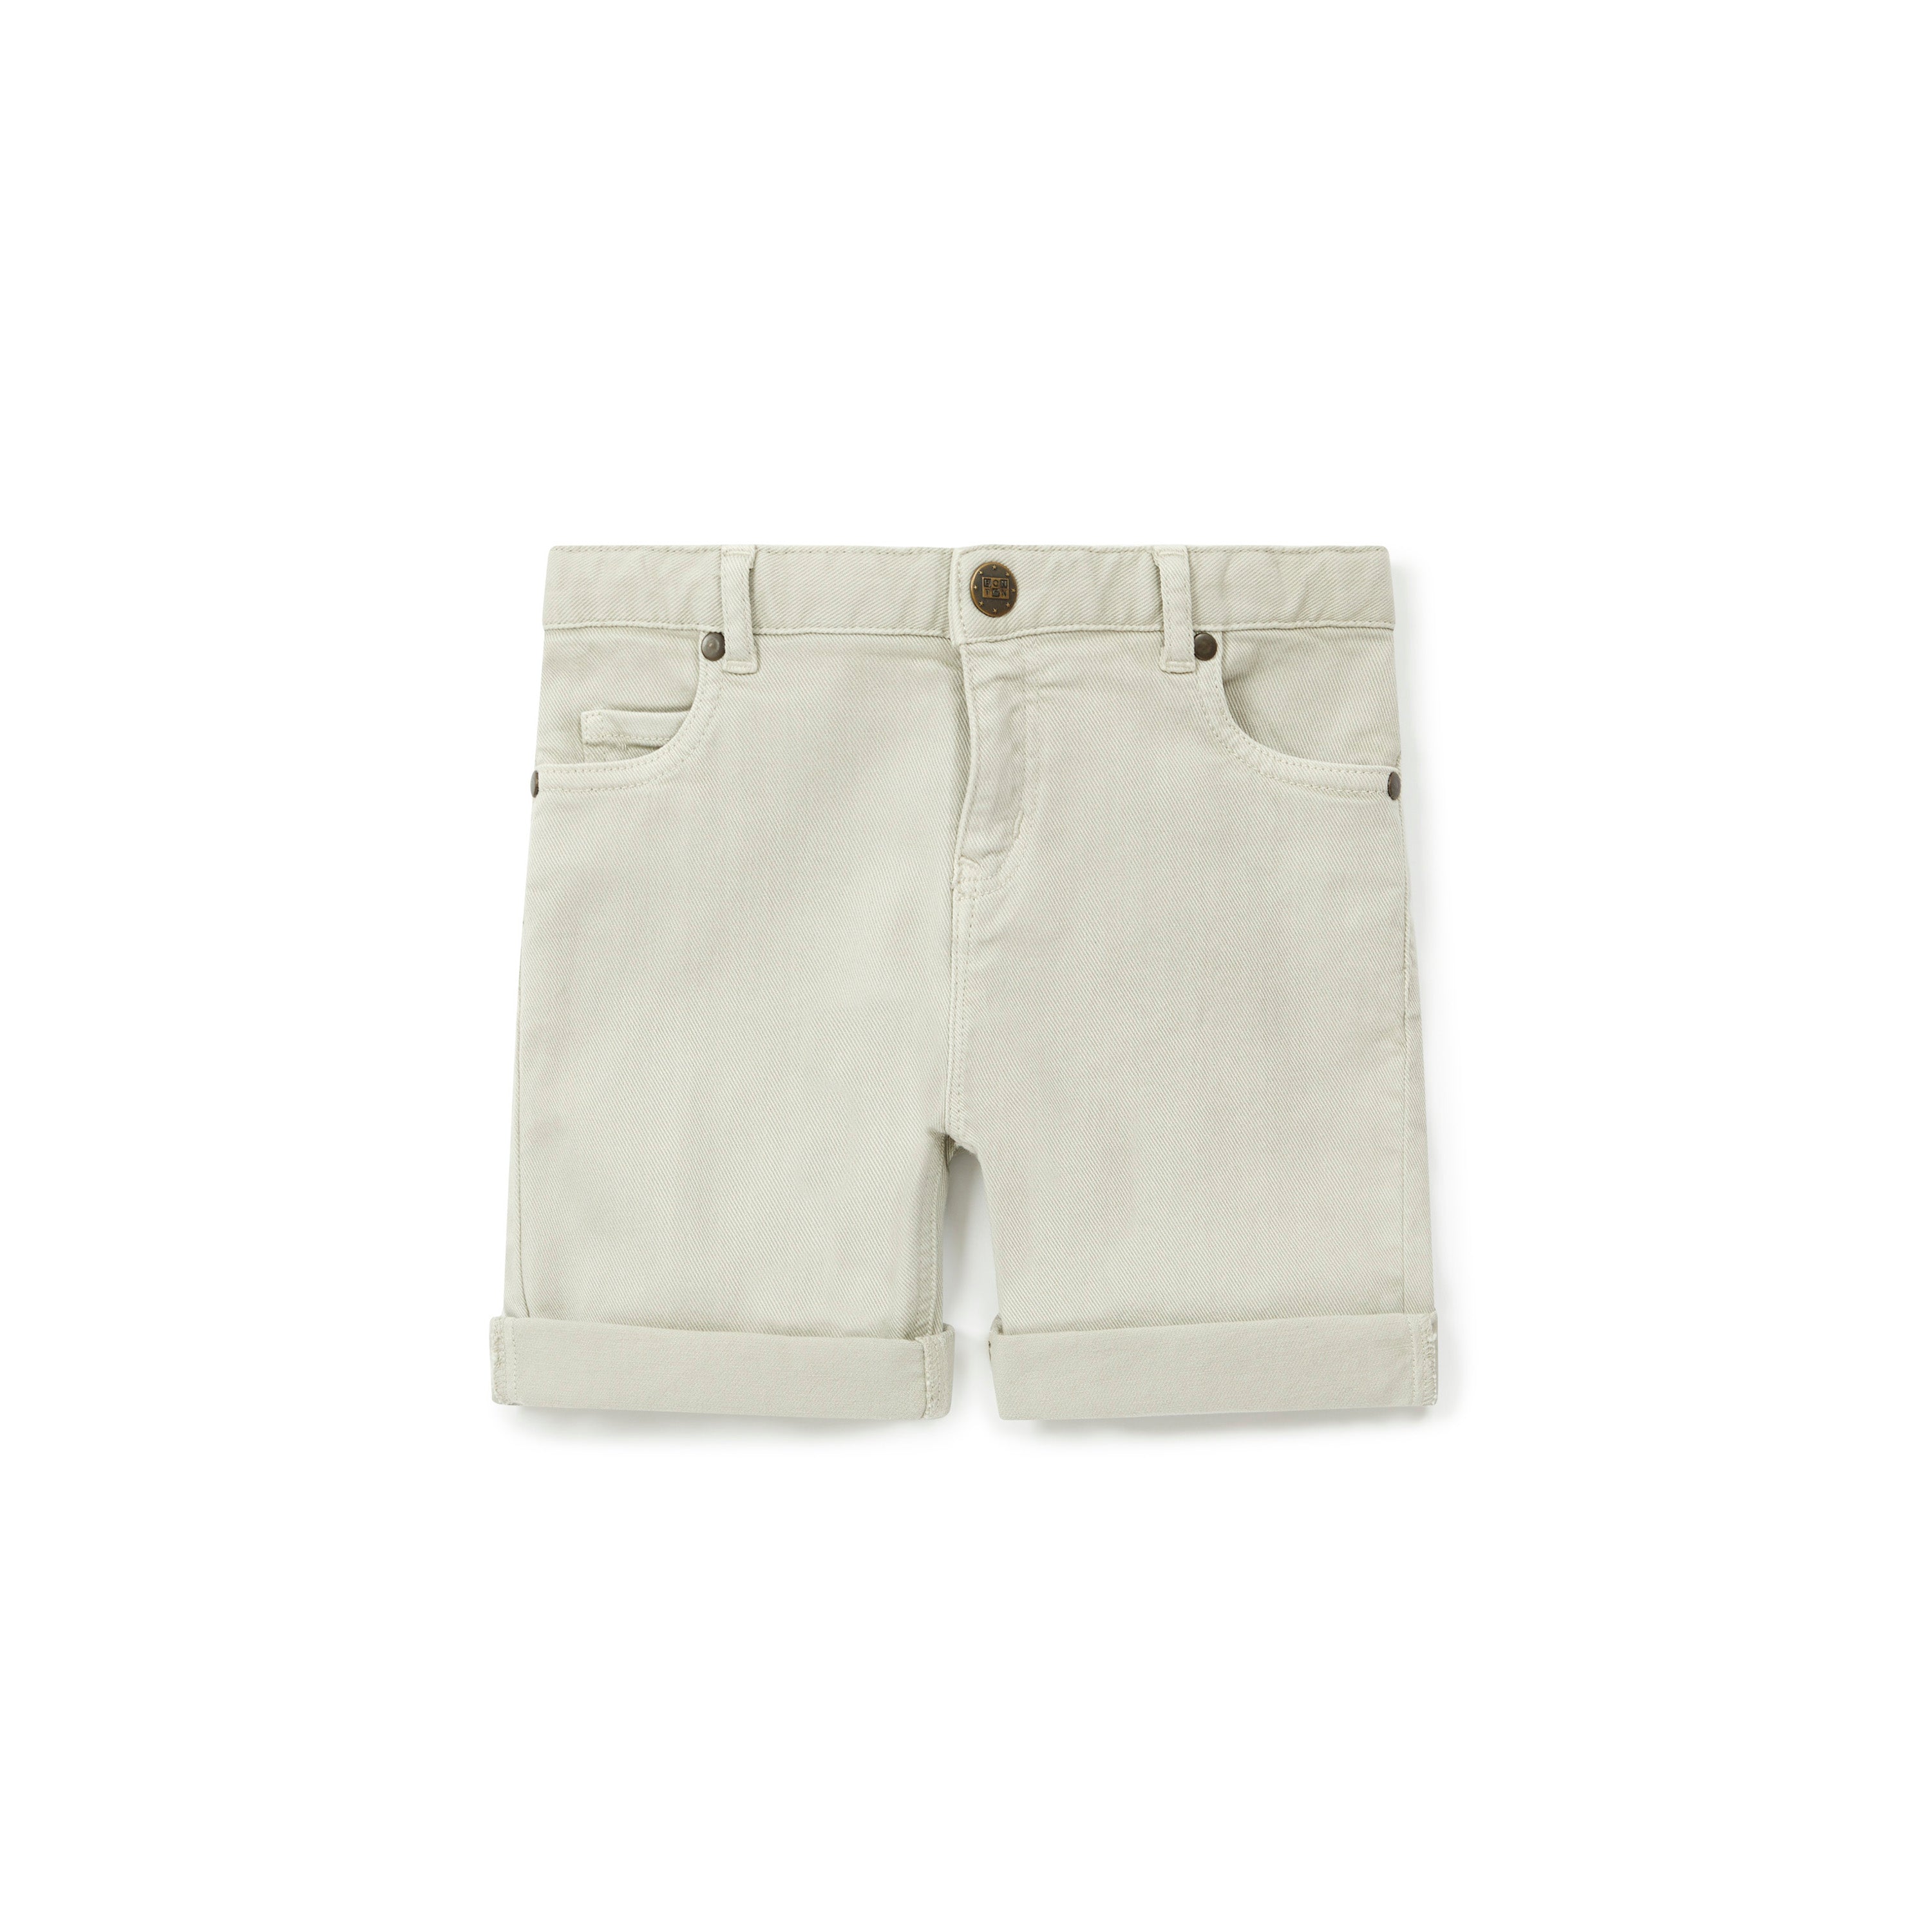 Boys Off-white Cotton Shorts